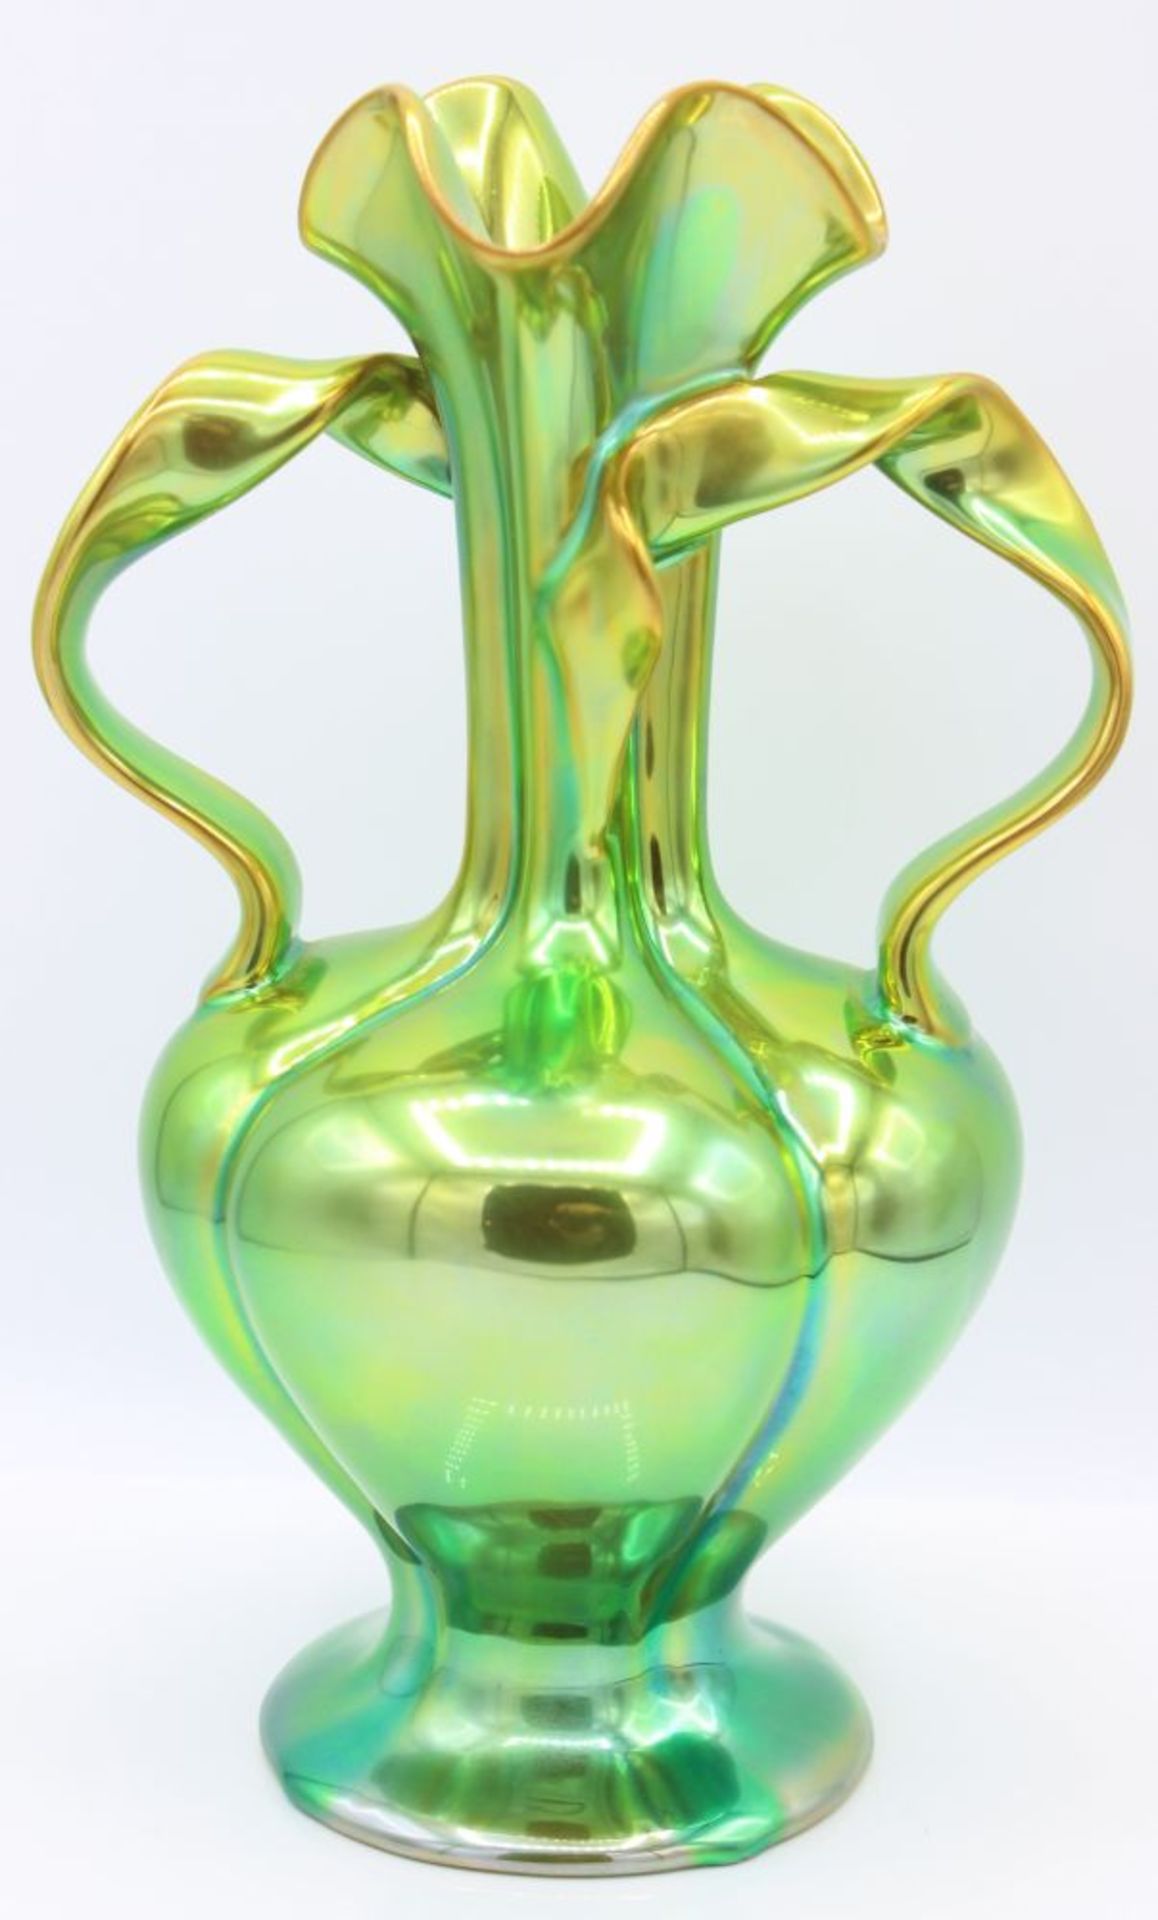 Vase - Zsolnay Pecs Porzellan, grün/gold lystrierend, bauchige Form mit schlankem Blütenhals,